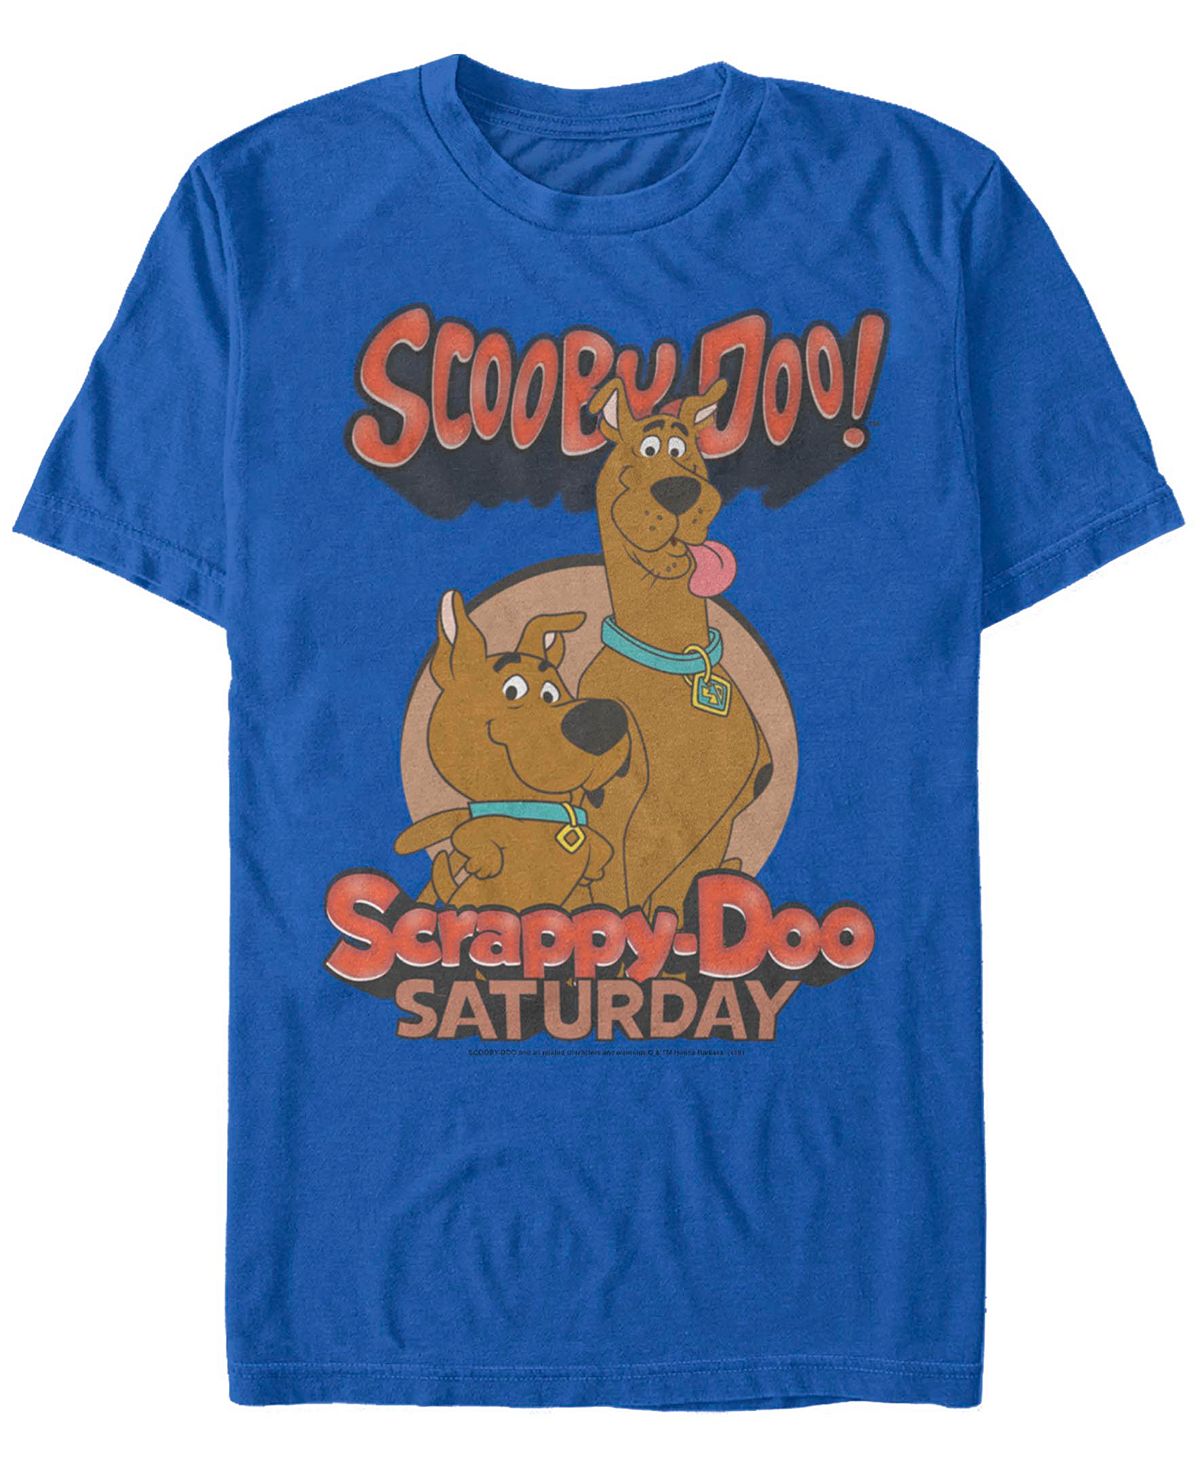 Мужская футболка с коротким рукавом Scooby Doo Saturday Doos Fifth Sun мужская футболка с короткими рукавами scooby doo creepy flashlight group fifth sun черный